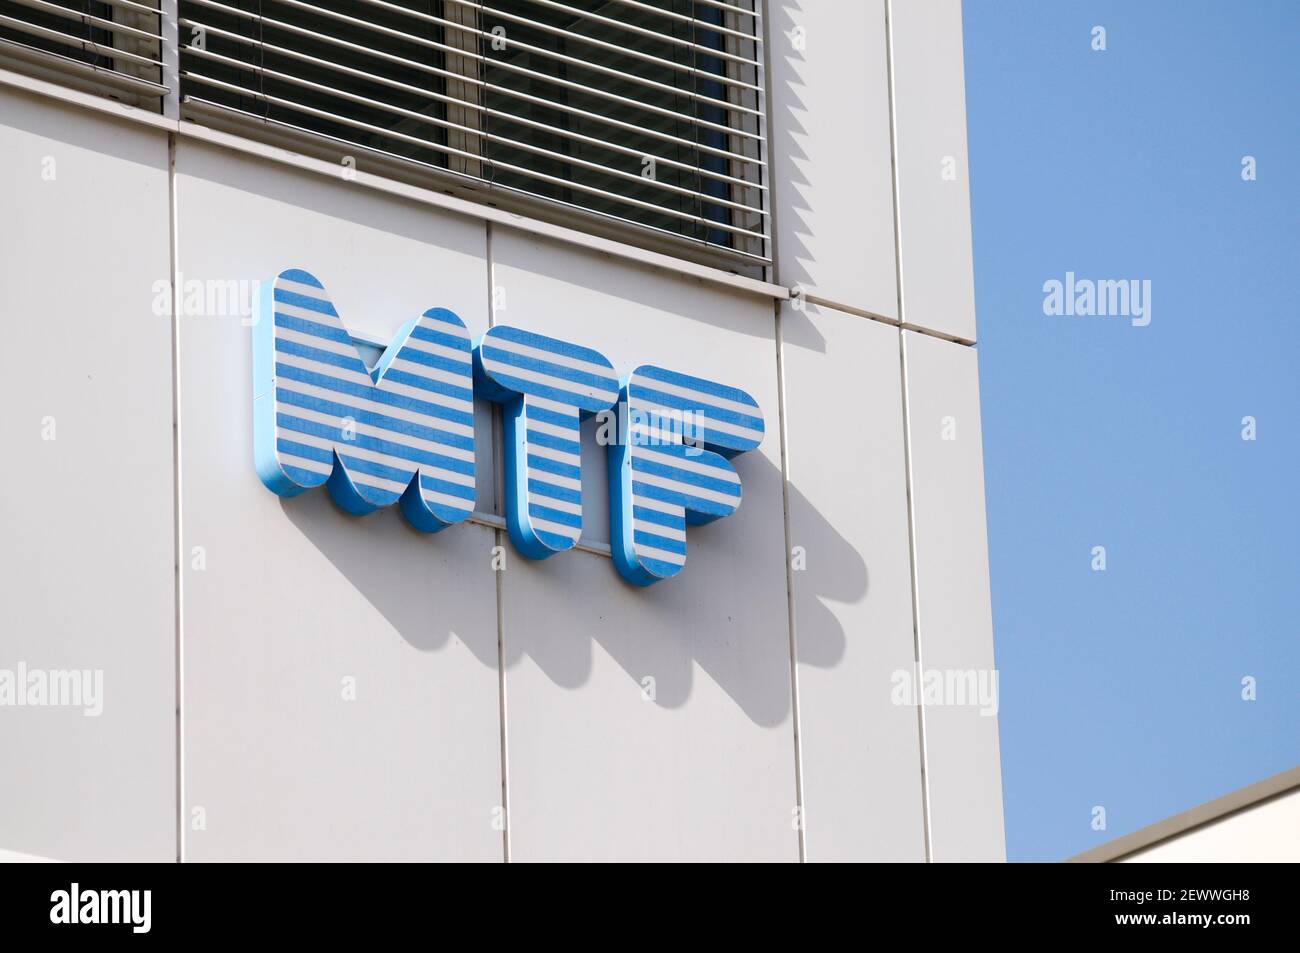 Zug, Suisse - 26 février 2021 : signe de la société MTF accroché à un bâtiment à Zug, Suisse. MTF est le premier fournisseur de SERVICES INFORMATIQUES et INFORMATIQUES Banque D'Images